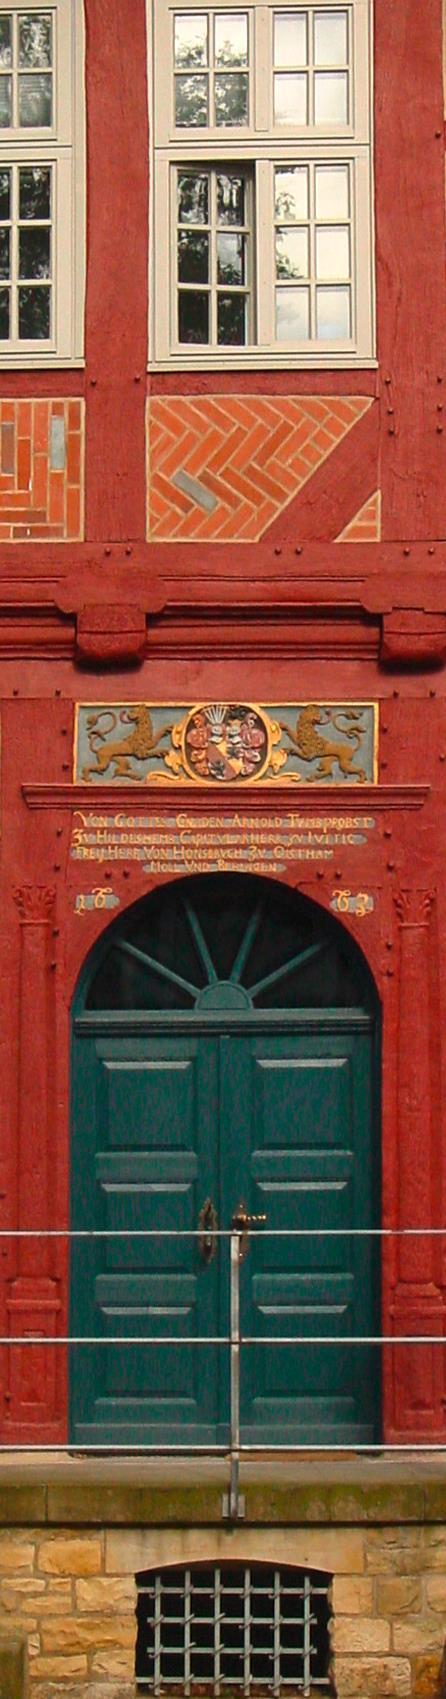 Niedersächsisches Landesinstitut